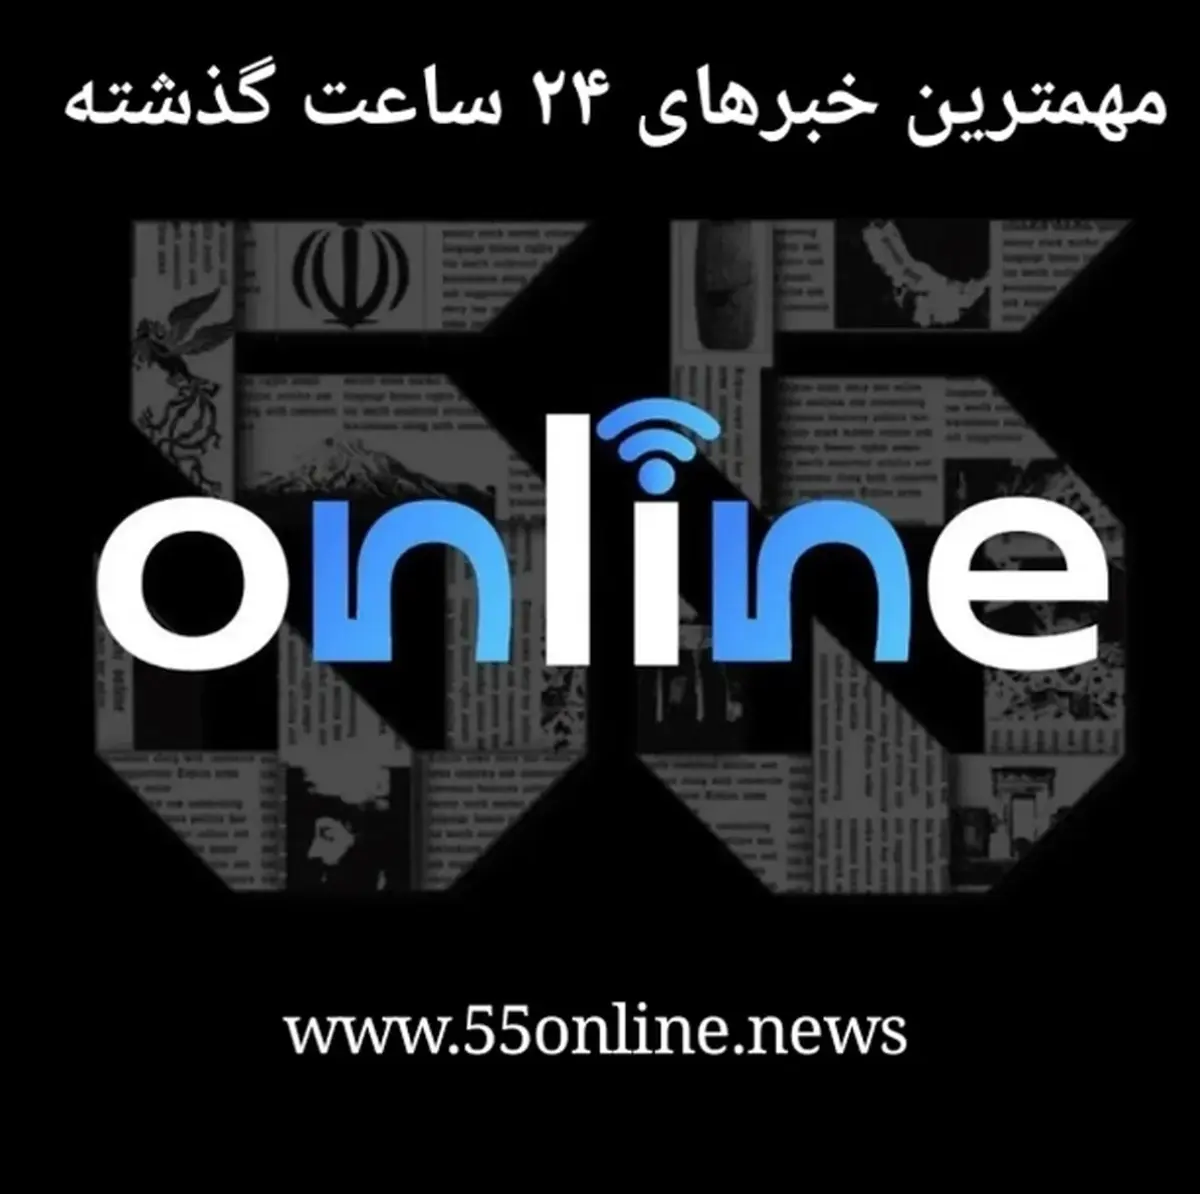 مروری به اخبار و اتفاقات مهم امروز | خلاصه اخبار مهم روز ۹ تیر